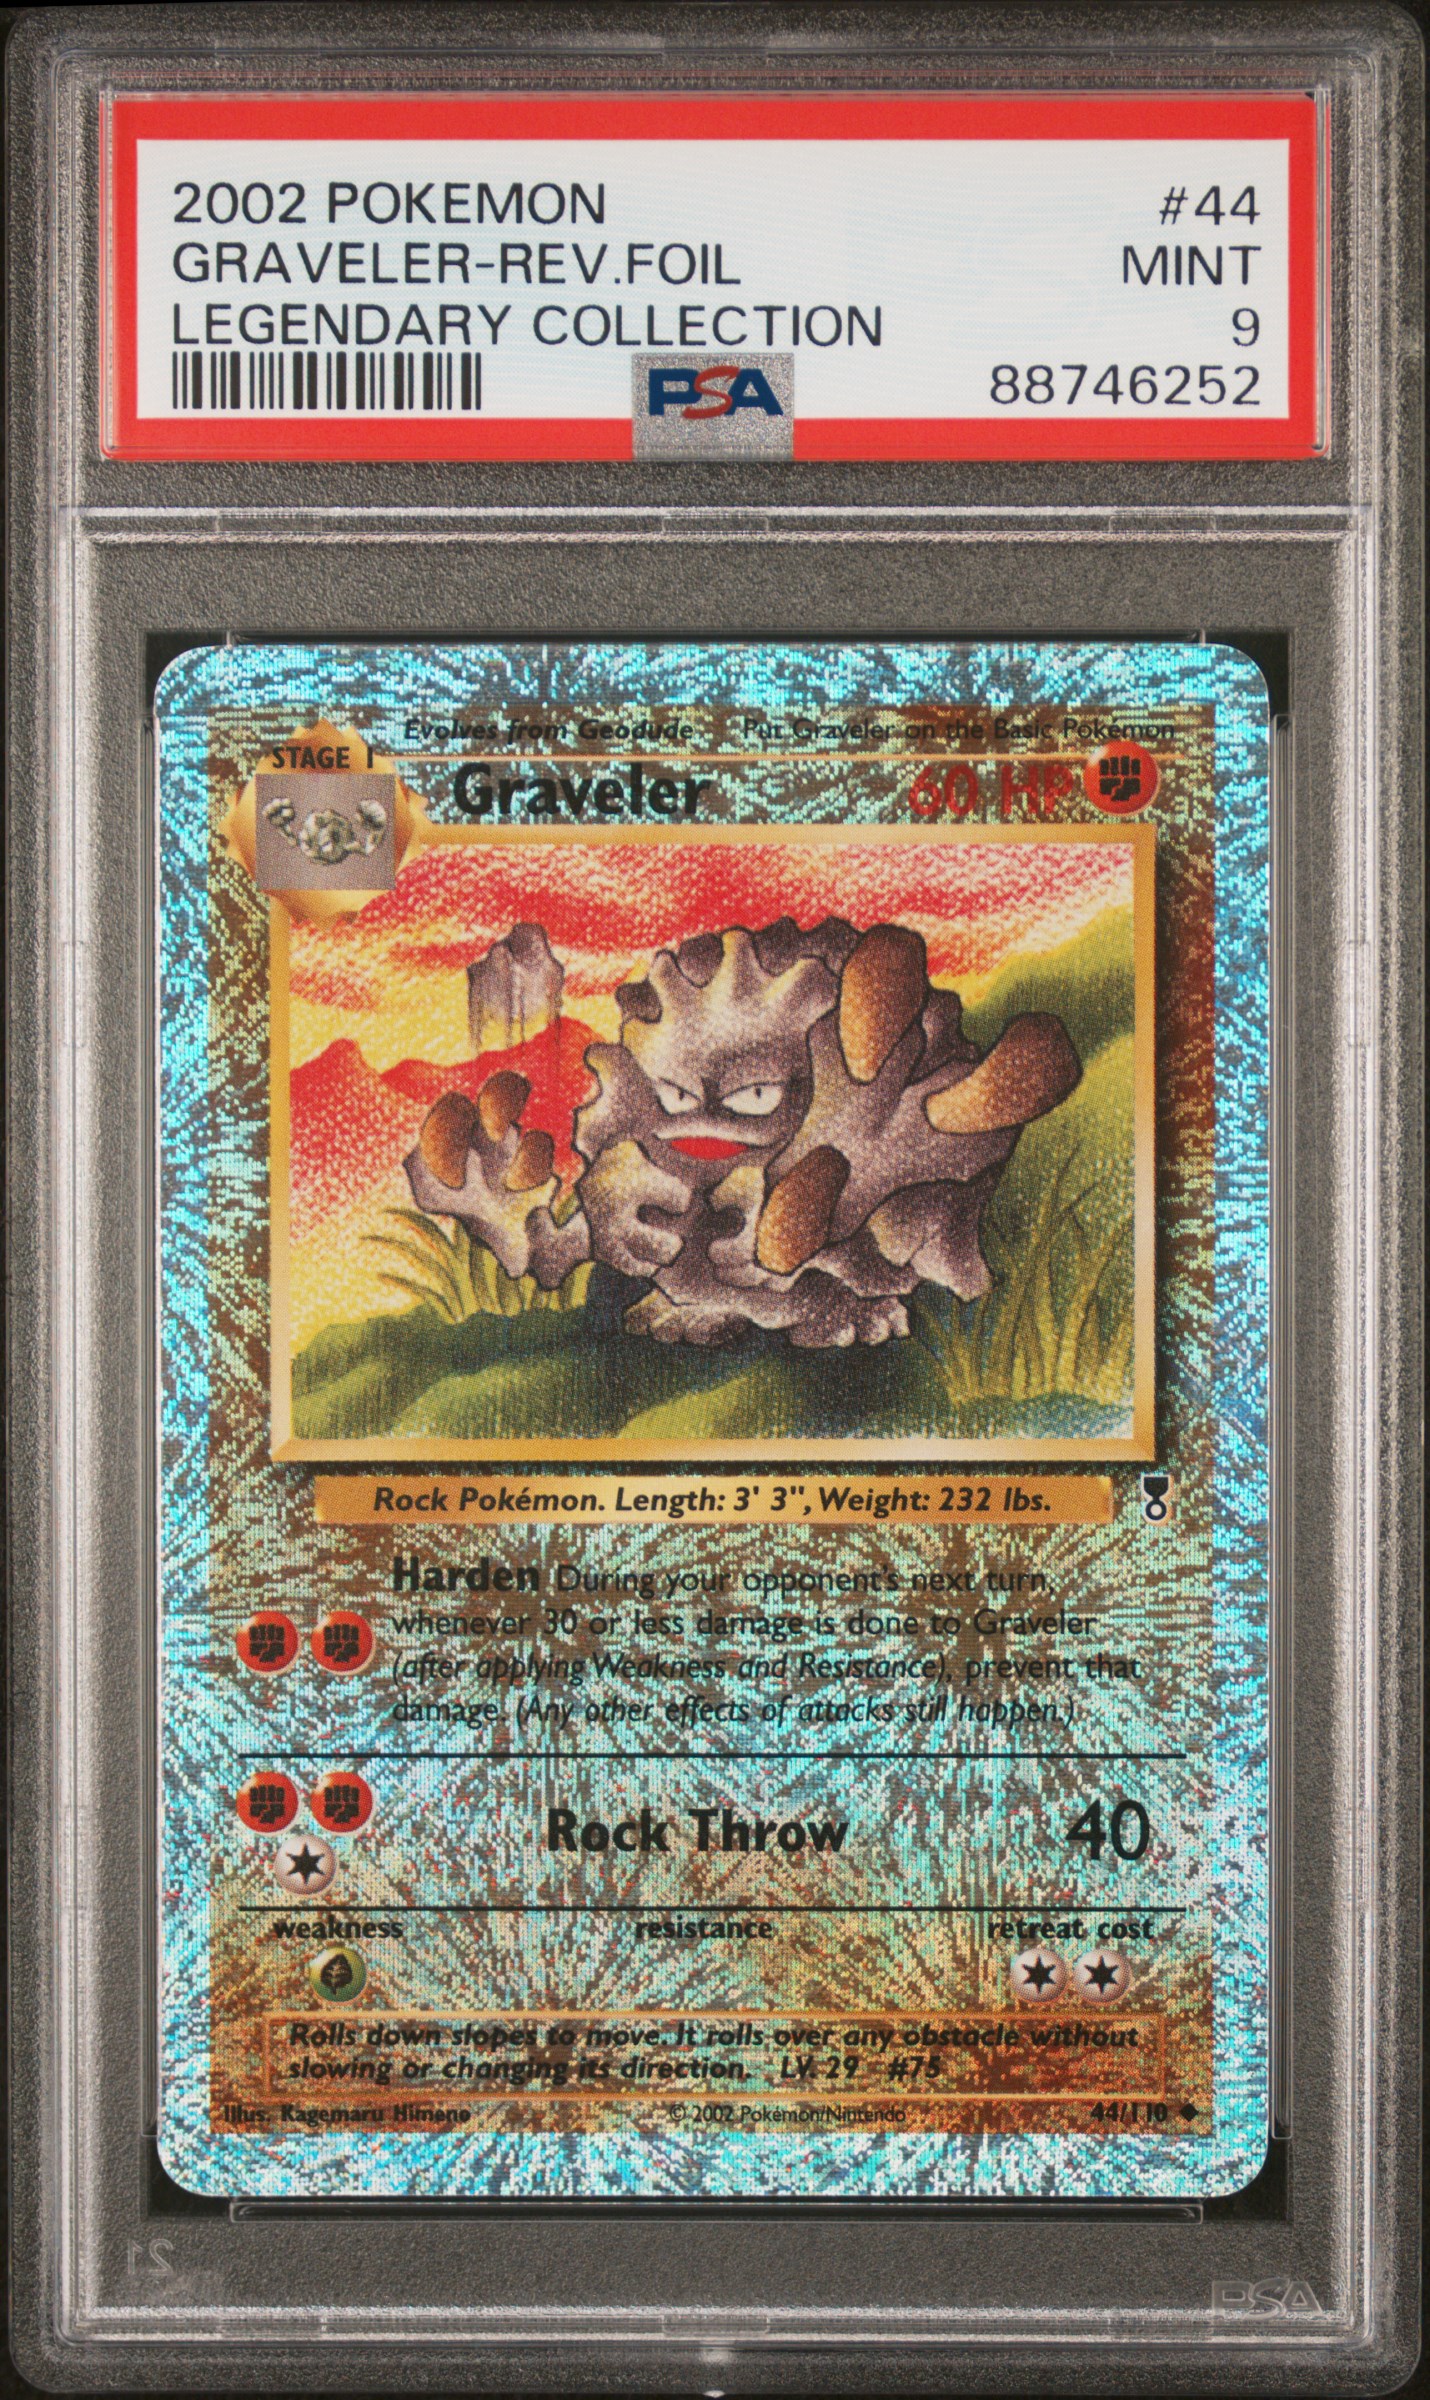 2002 Pokemon Legendary Collection 44 Graveler-Reverse Foil – PSA MINT 9